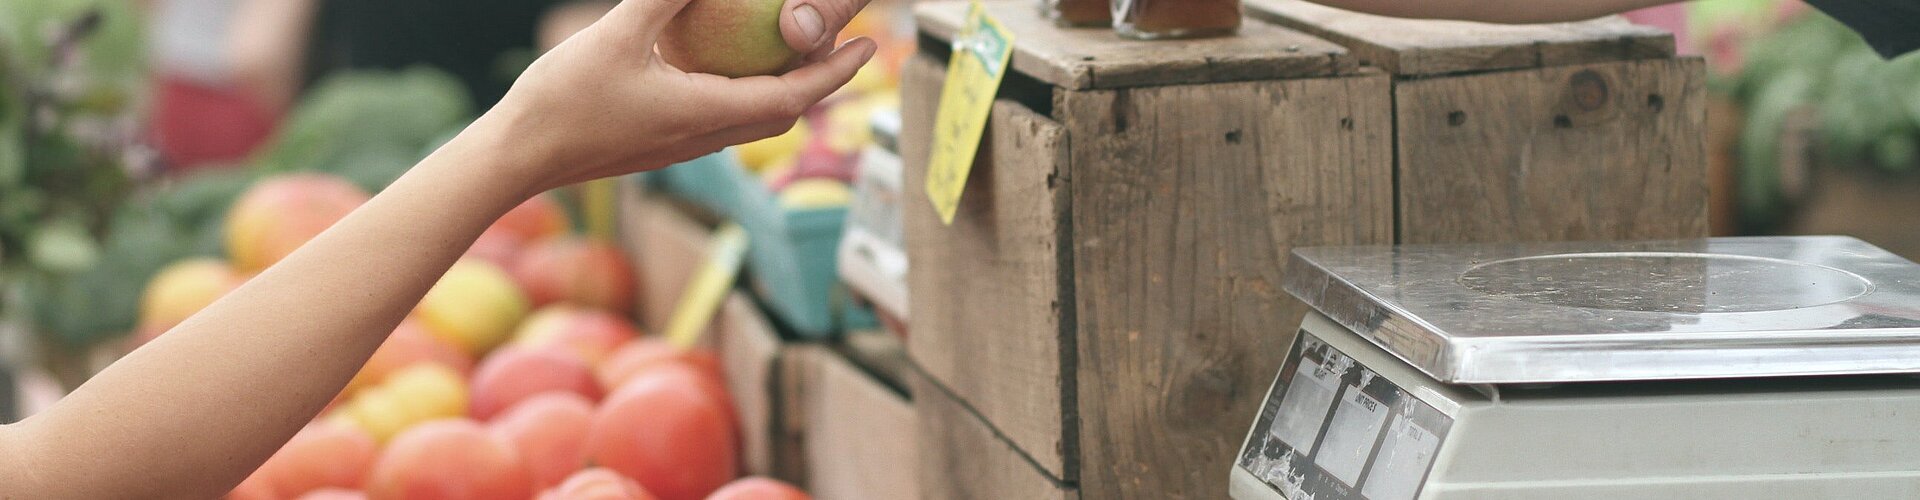 Obst und Gemüse am Bauernmarkt